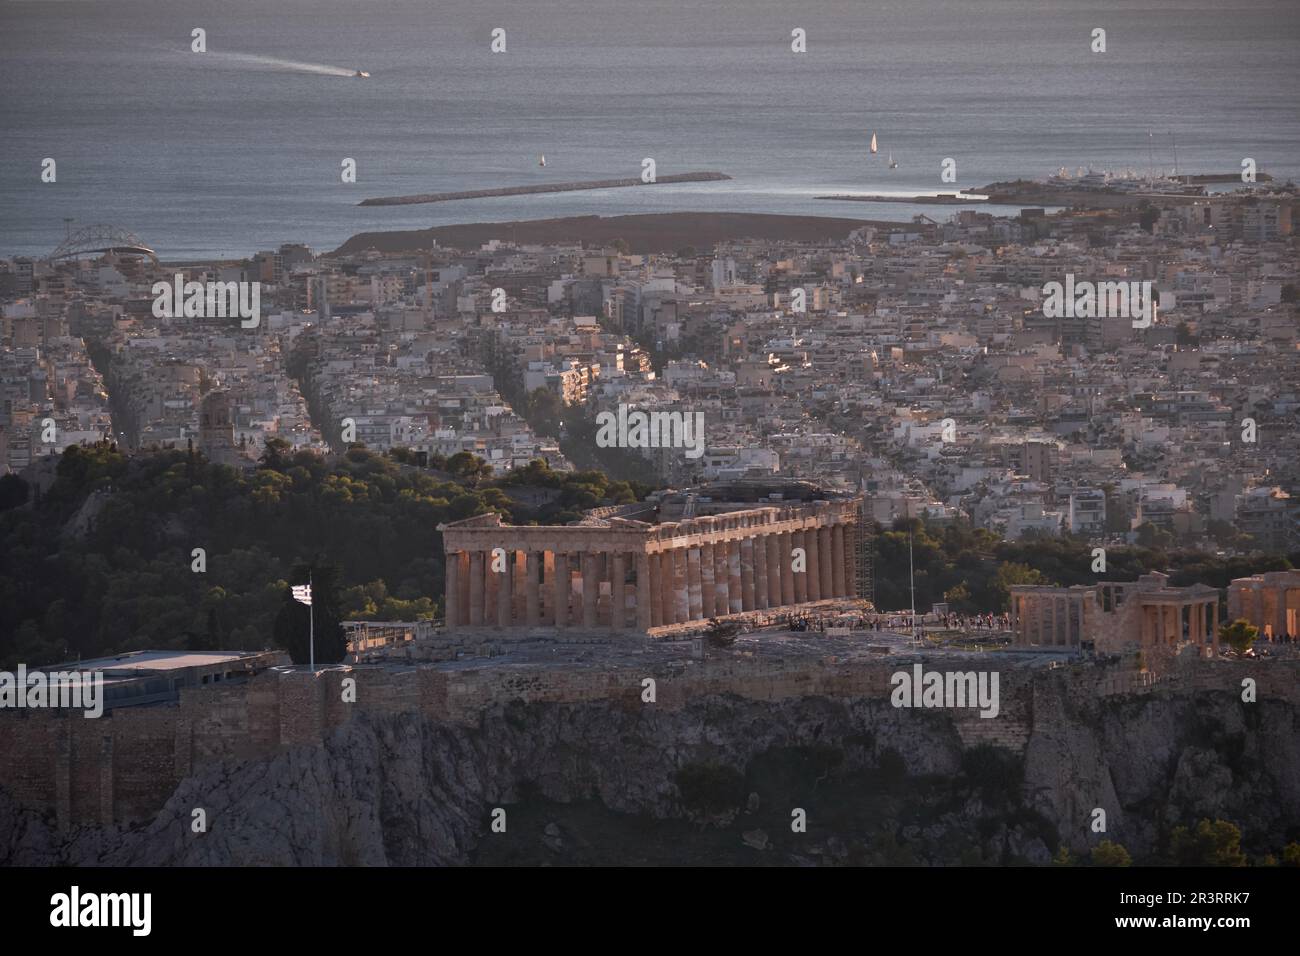 Vue panoramique d'Athènes et de l'Acropole d'Athènes et du Parthénon depuis la colline du Lycabette au coucher du soleil - Grèce Banque D'Images